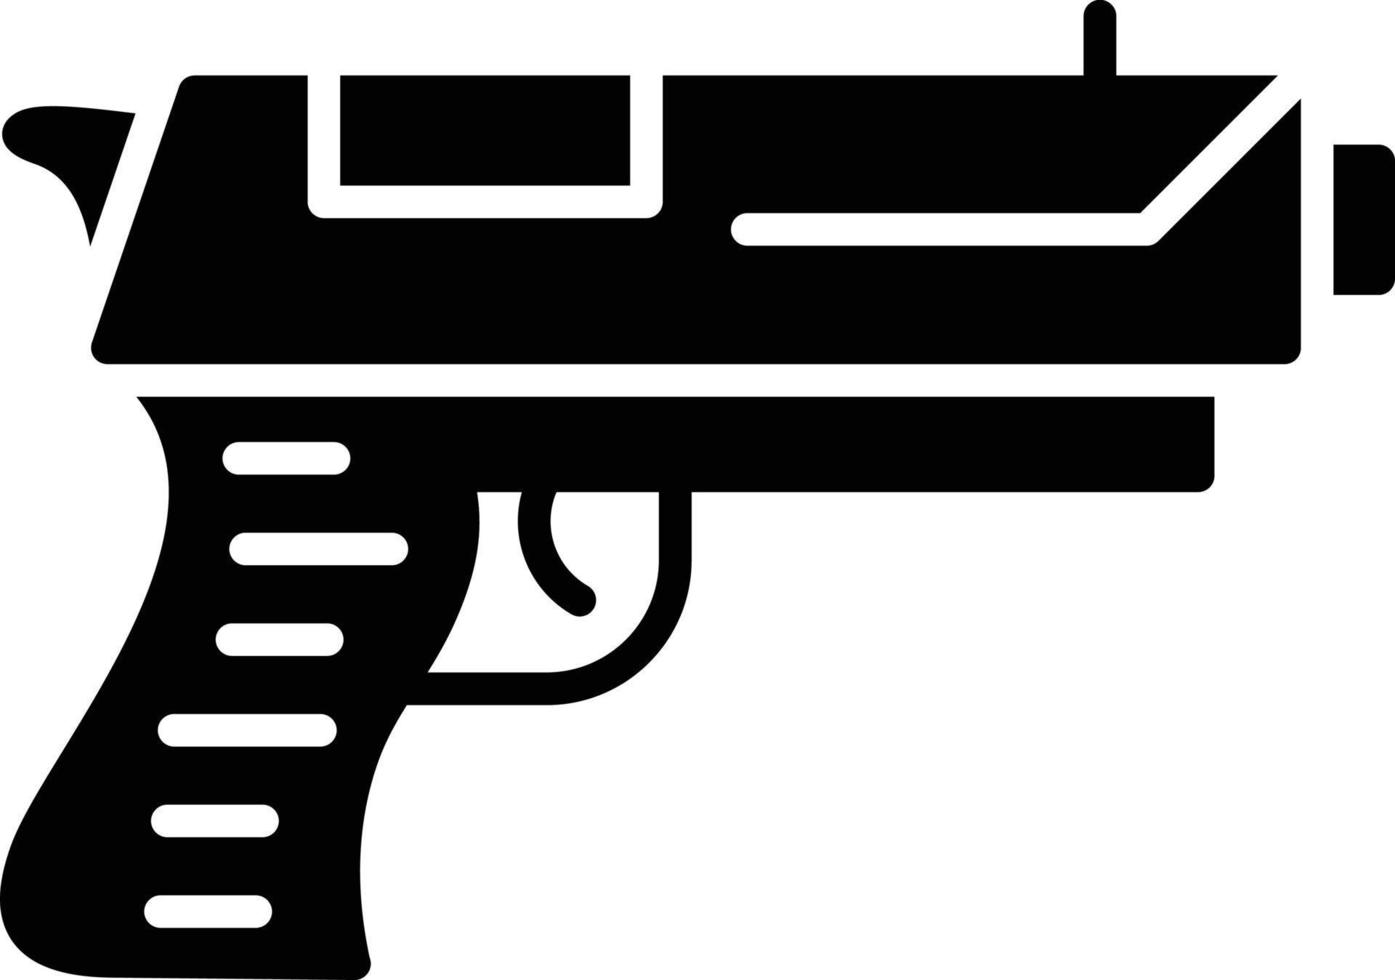 diseño de icono creativo de pistola vector